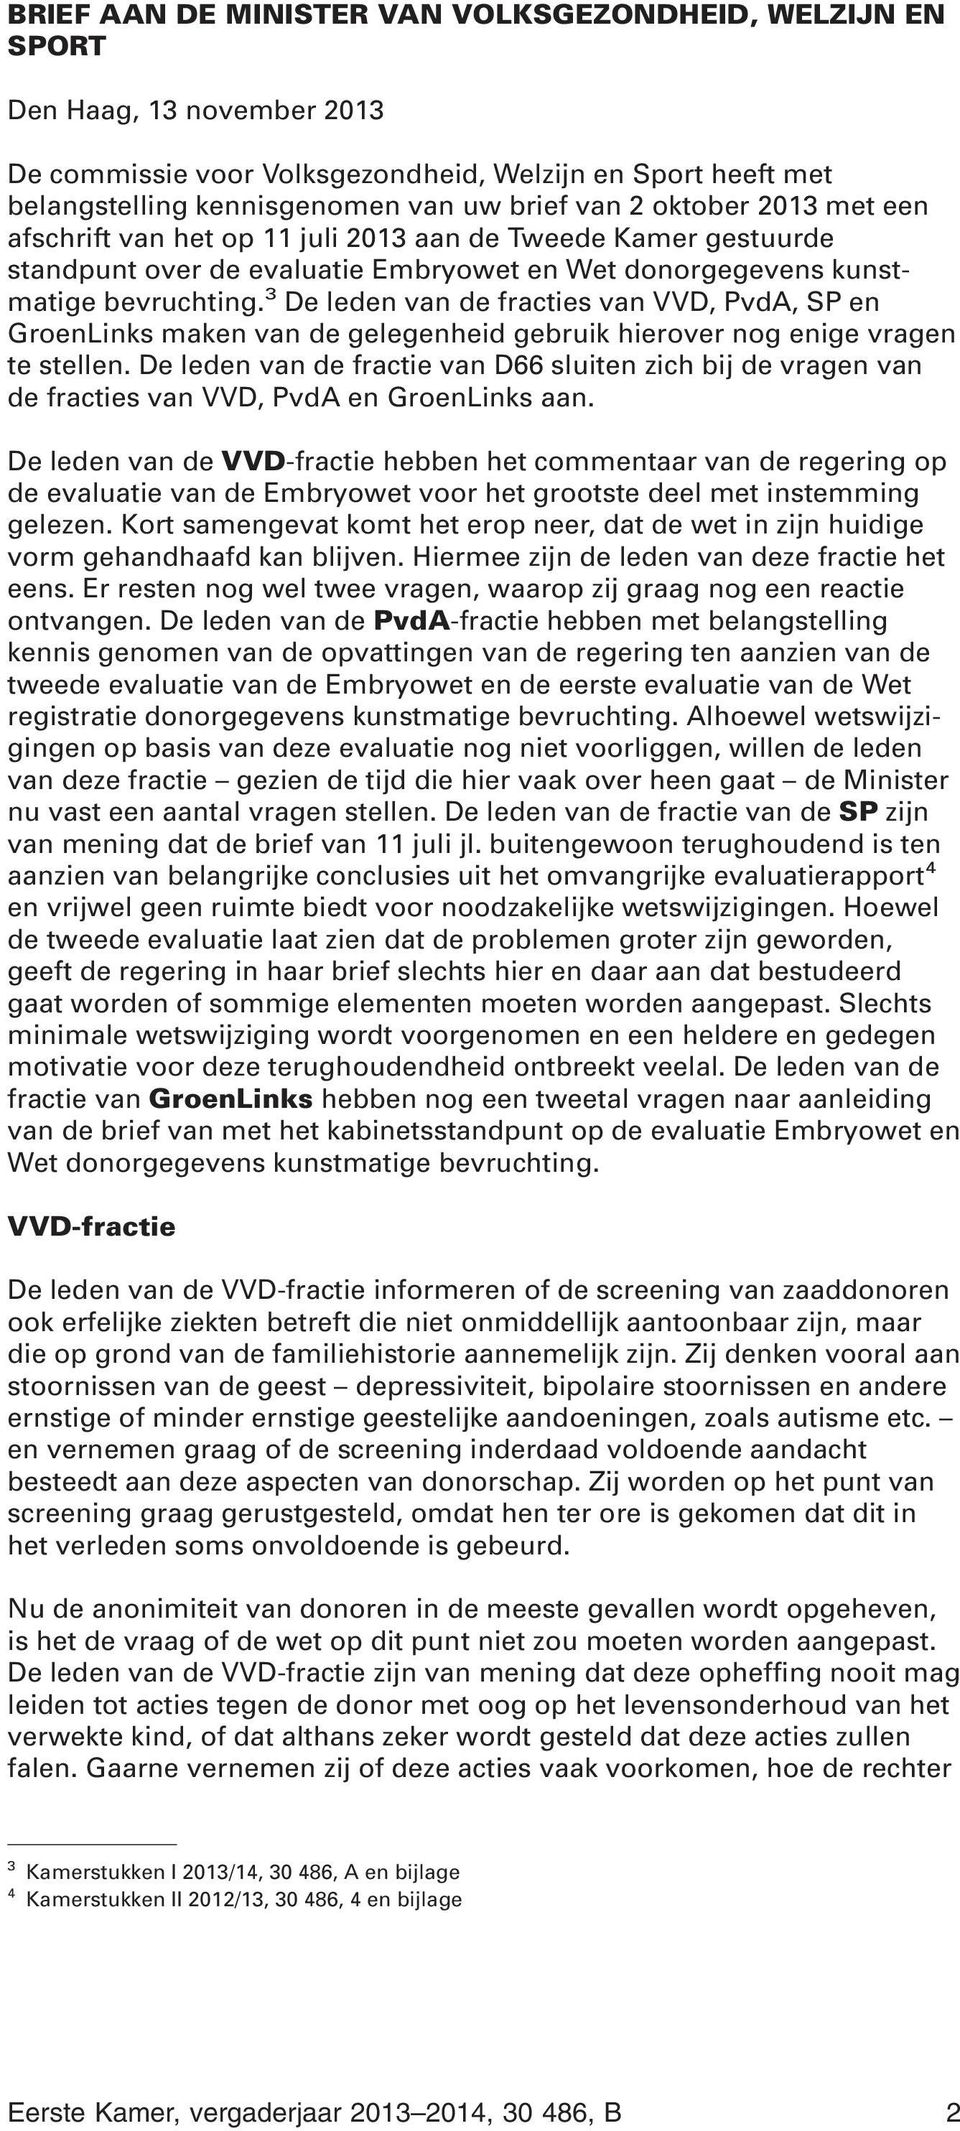 3 De leden van de fracties van VVD, PvdA, SP en GroenLinks maken van de gelegenheid gebruik hierover nog enige vragen te stellen.